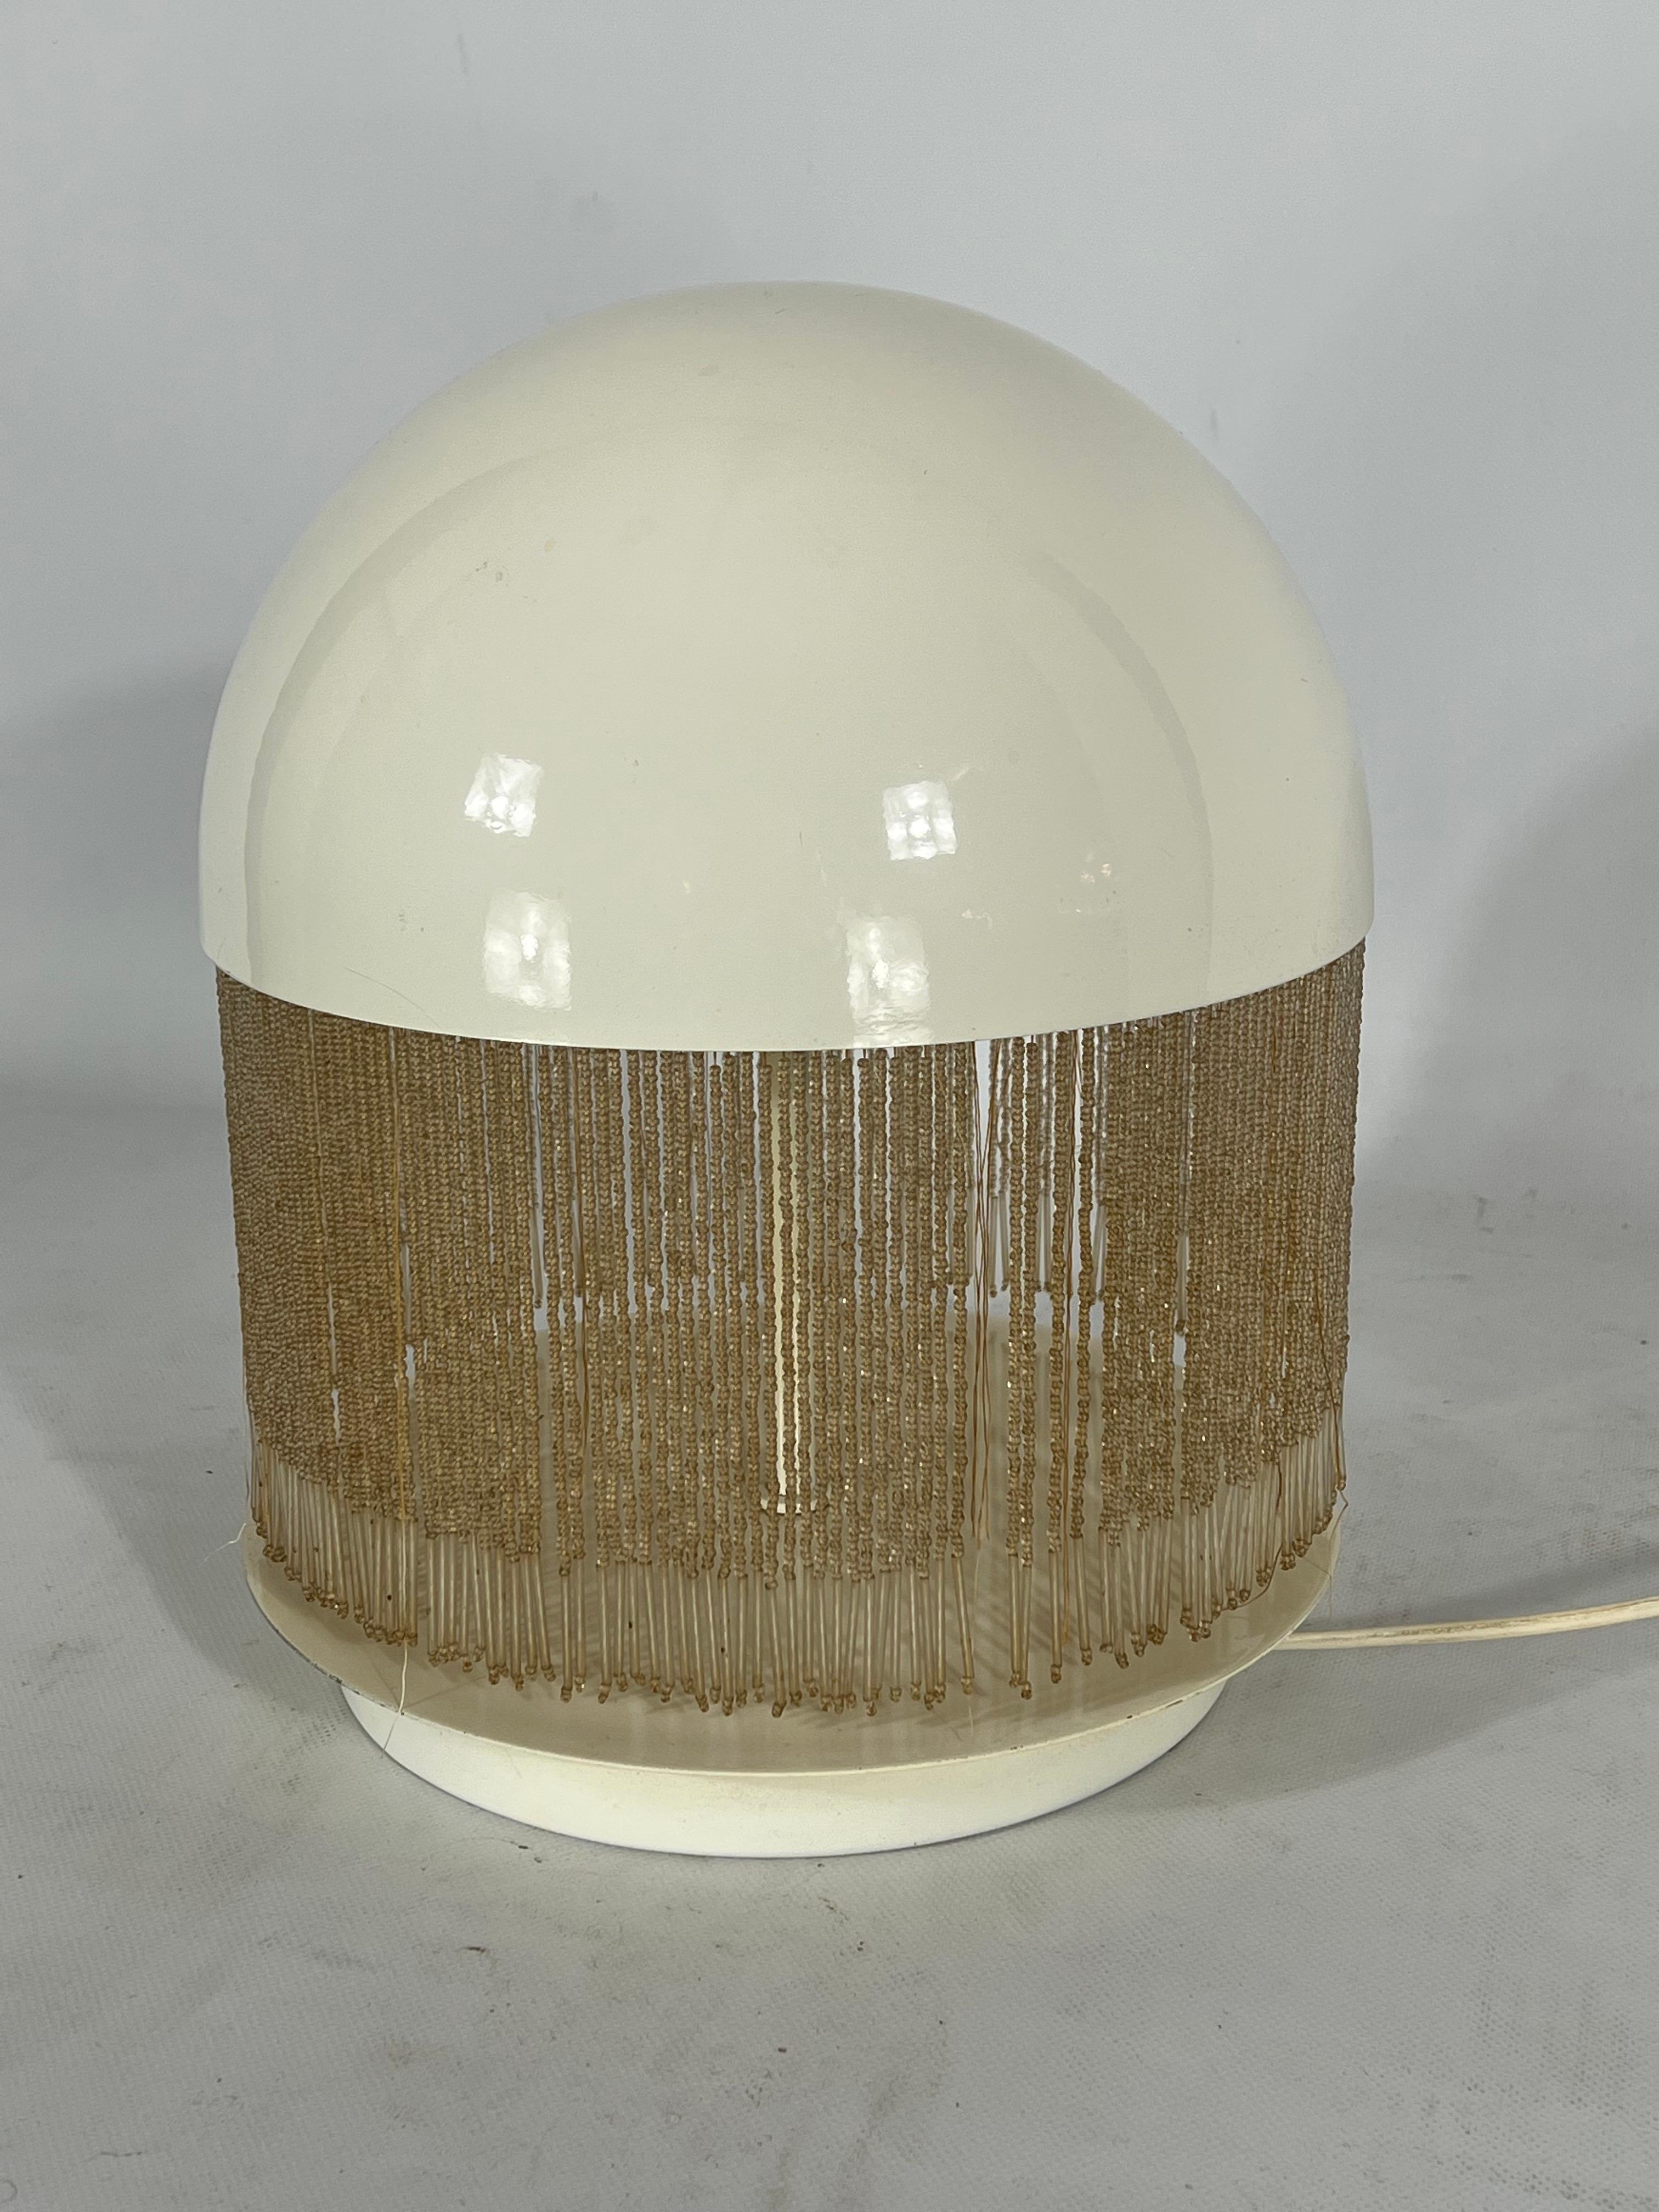 Rare Italian Modern Otero Table Lamp by Giuliana Gramigna for Quattrifolio, 1979 For Sale 4